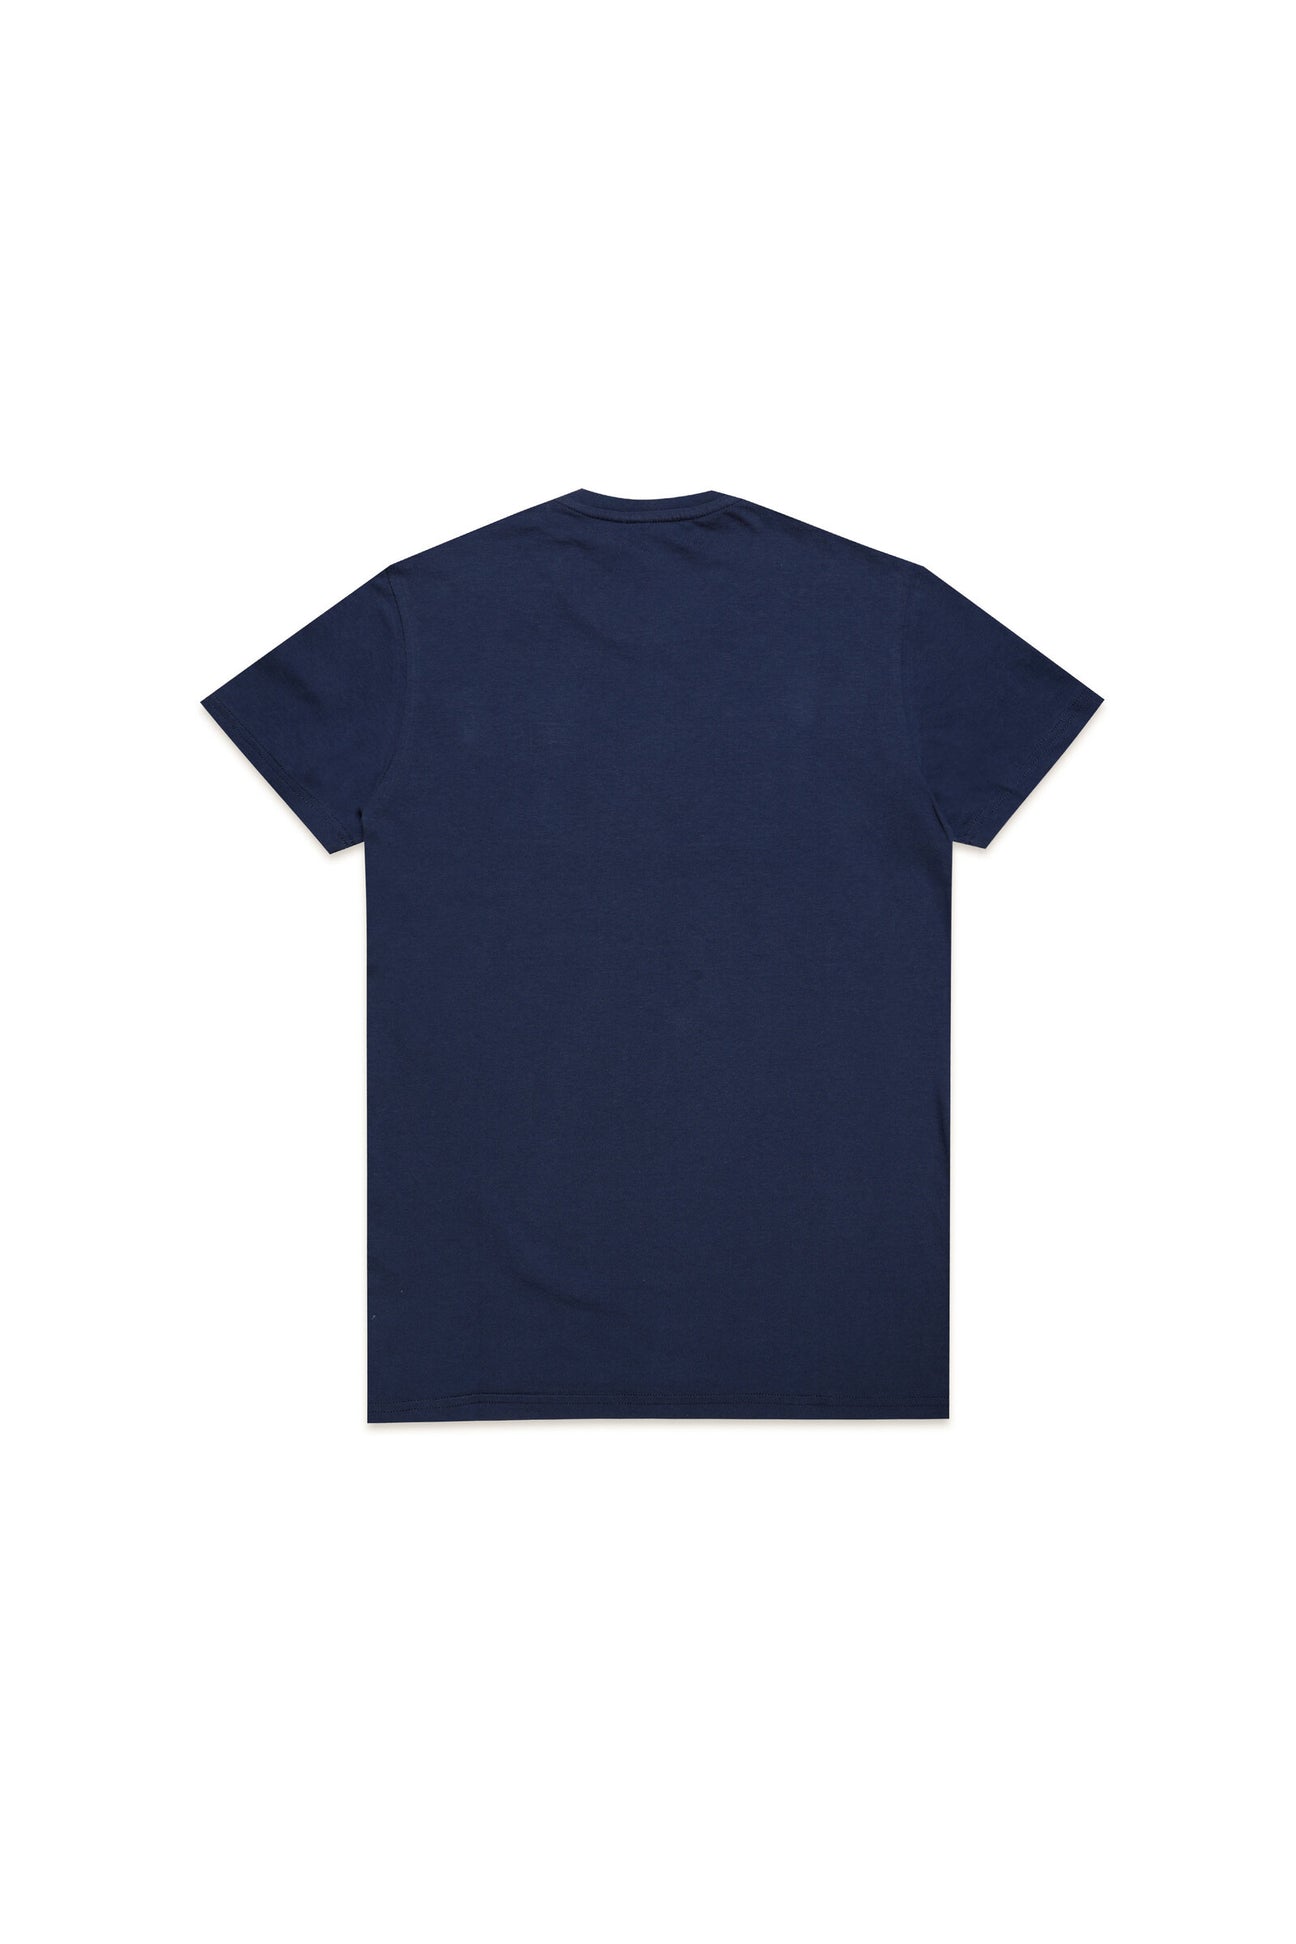 Blue t-shirt with Diesel logo applique Blue t-shirt with Diesel logo applique